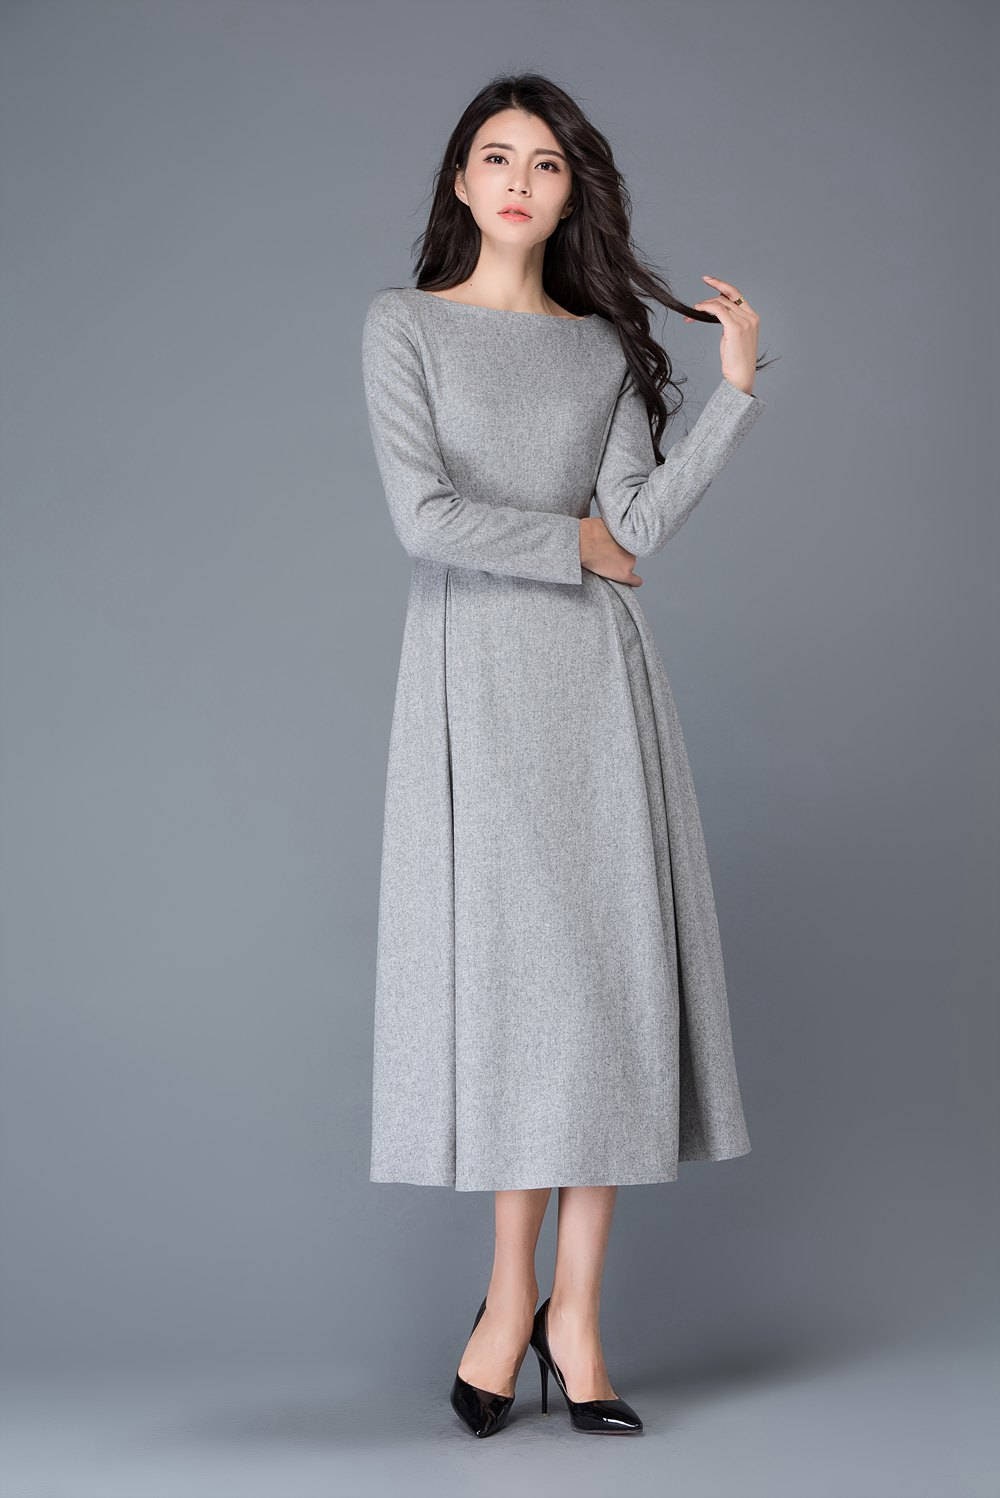 womens dress wool dress winter dress gray wool dress boat | Etsy